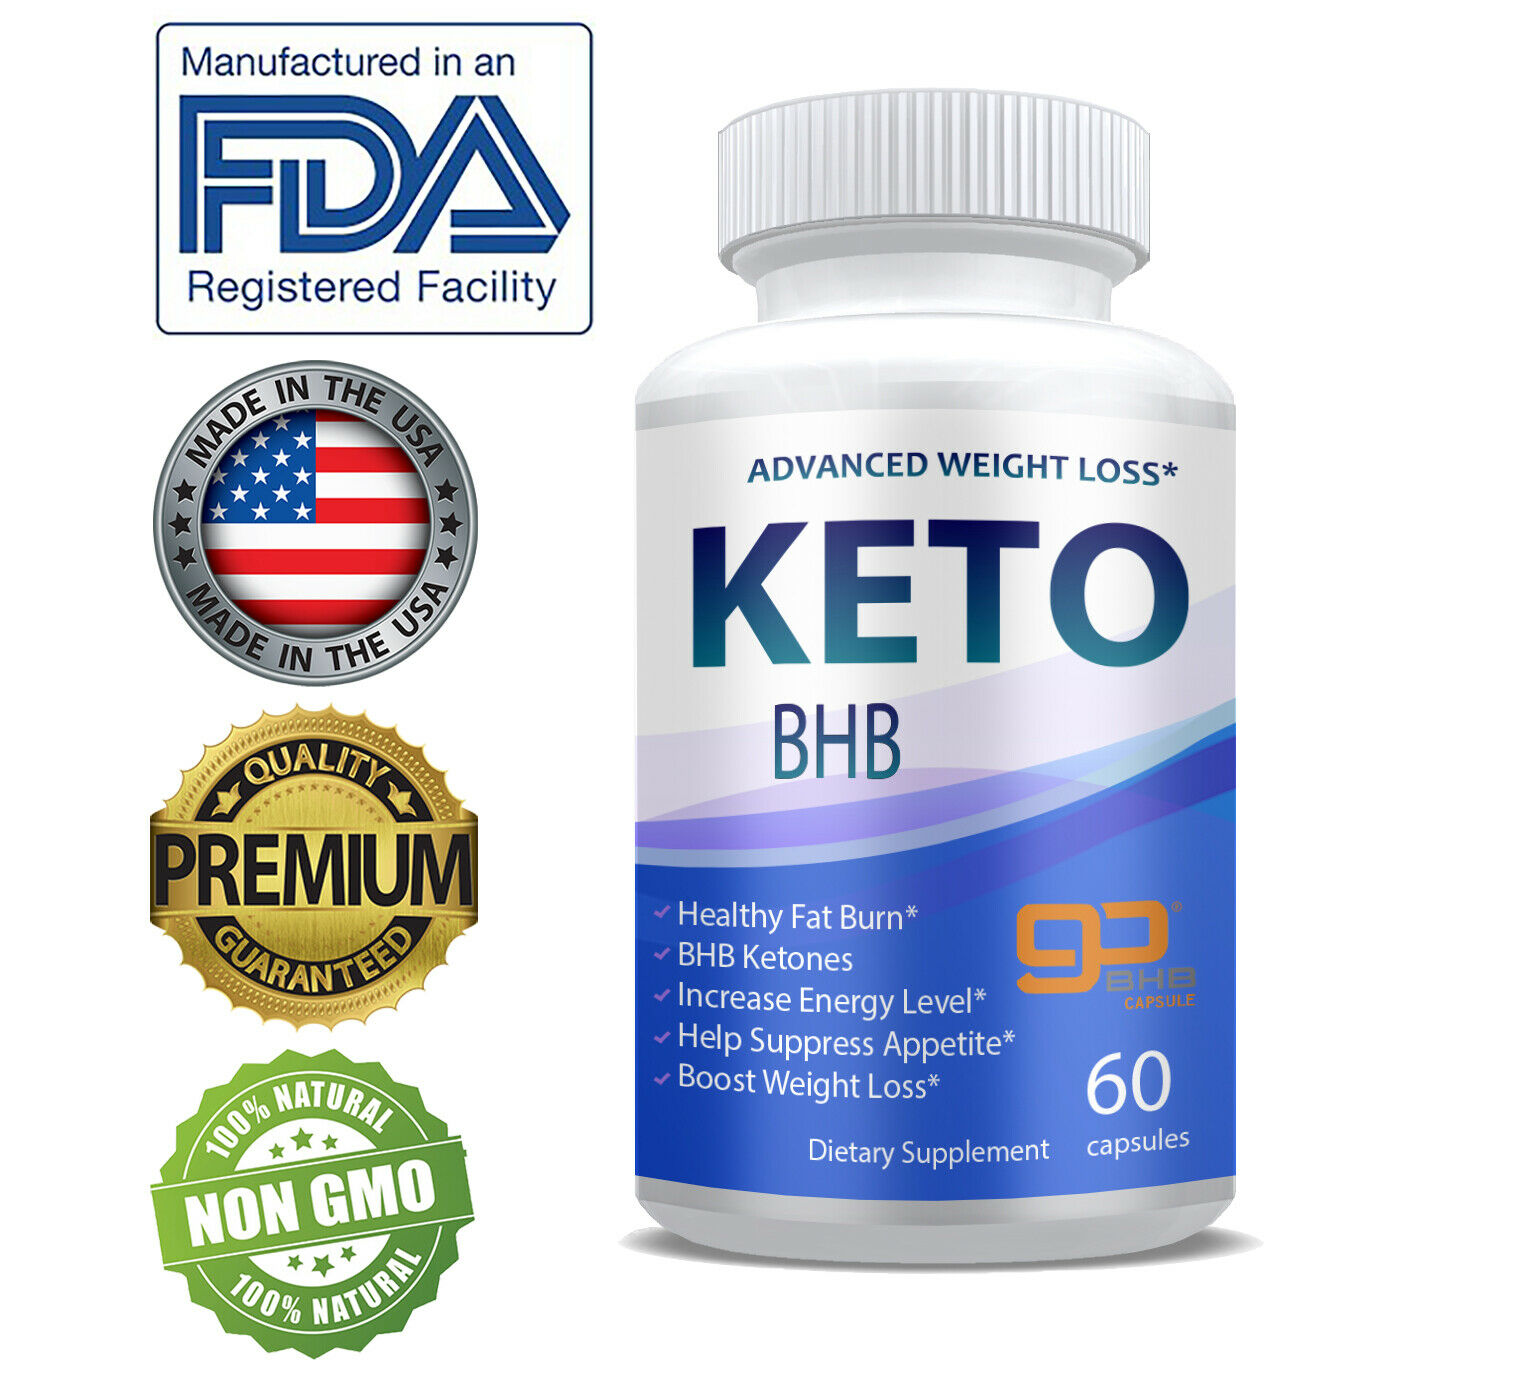 Shark Tank Keto Diet Pills Fast Weight Loss Supplements Keto Bhb Fat Burn Pills